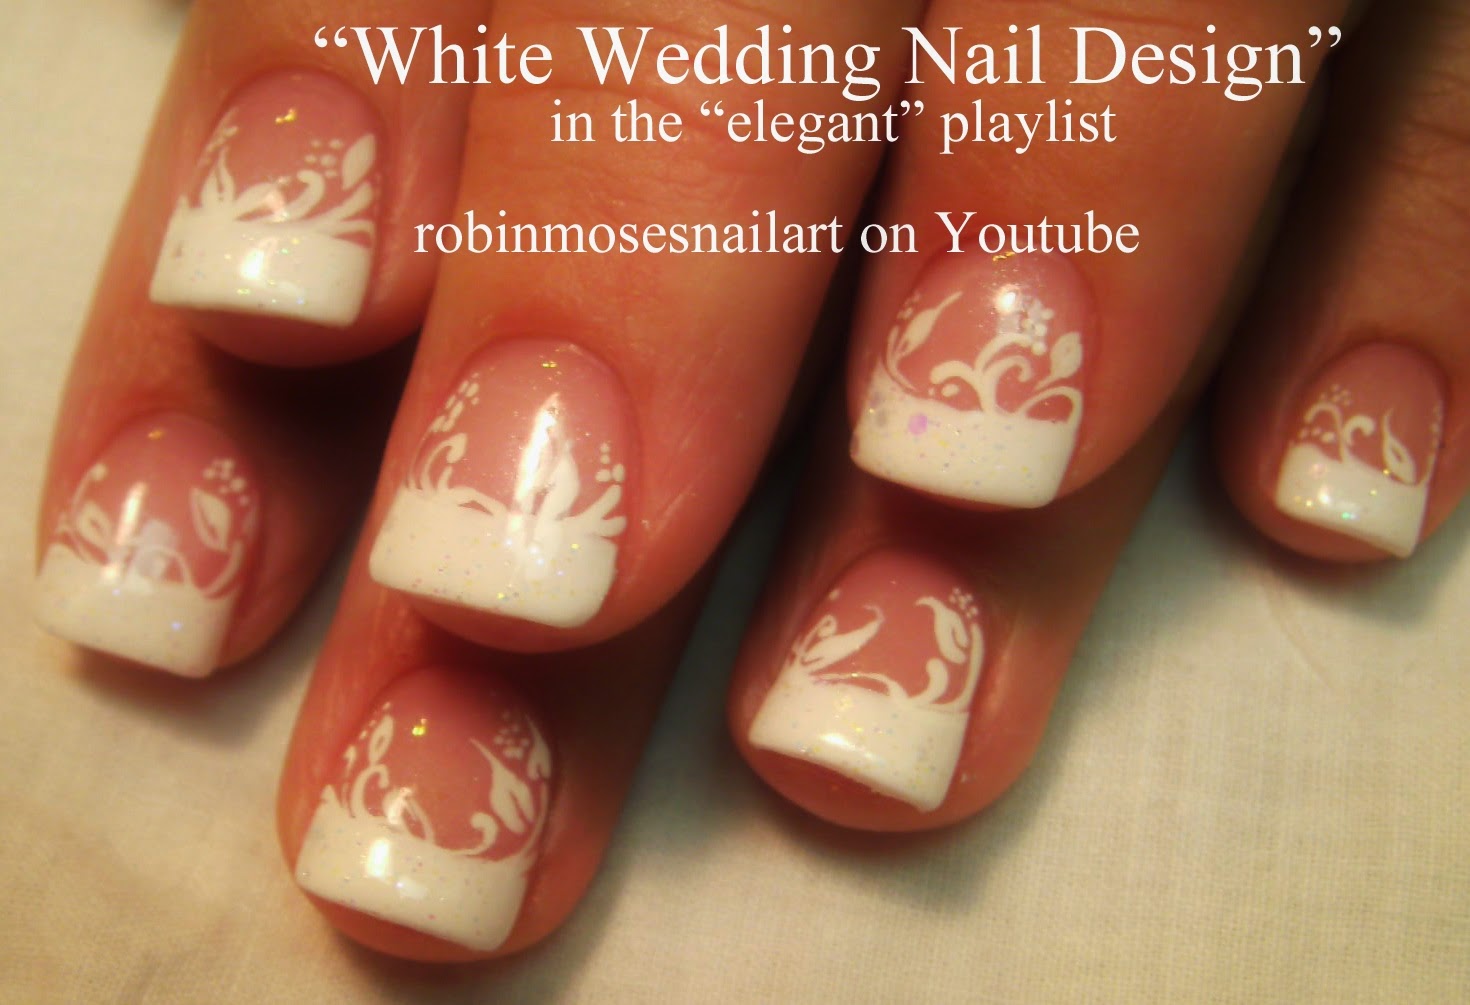 4. "Vintage Rose Wedding Nail Design" - wide 2